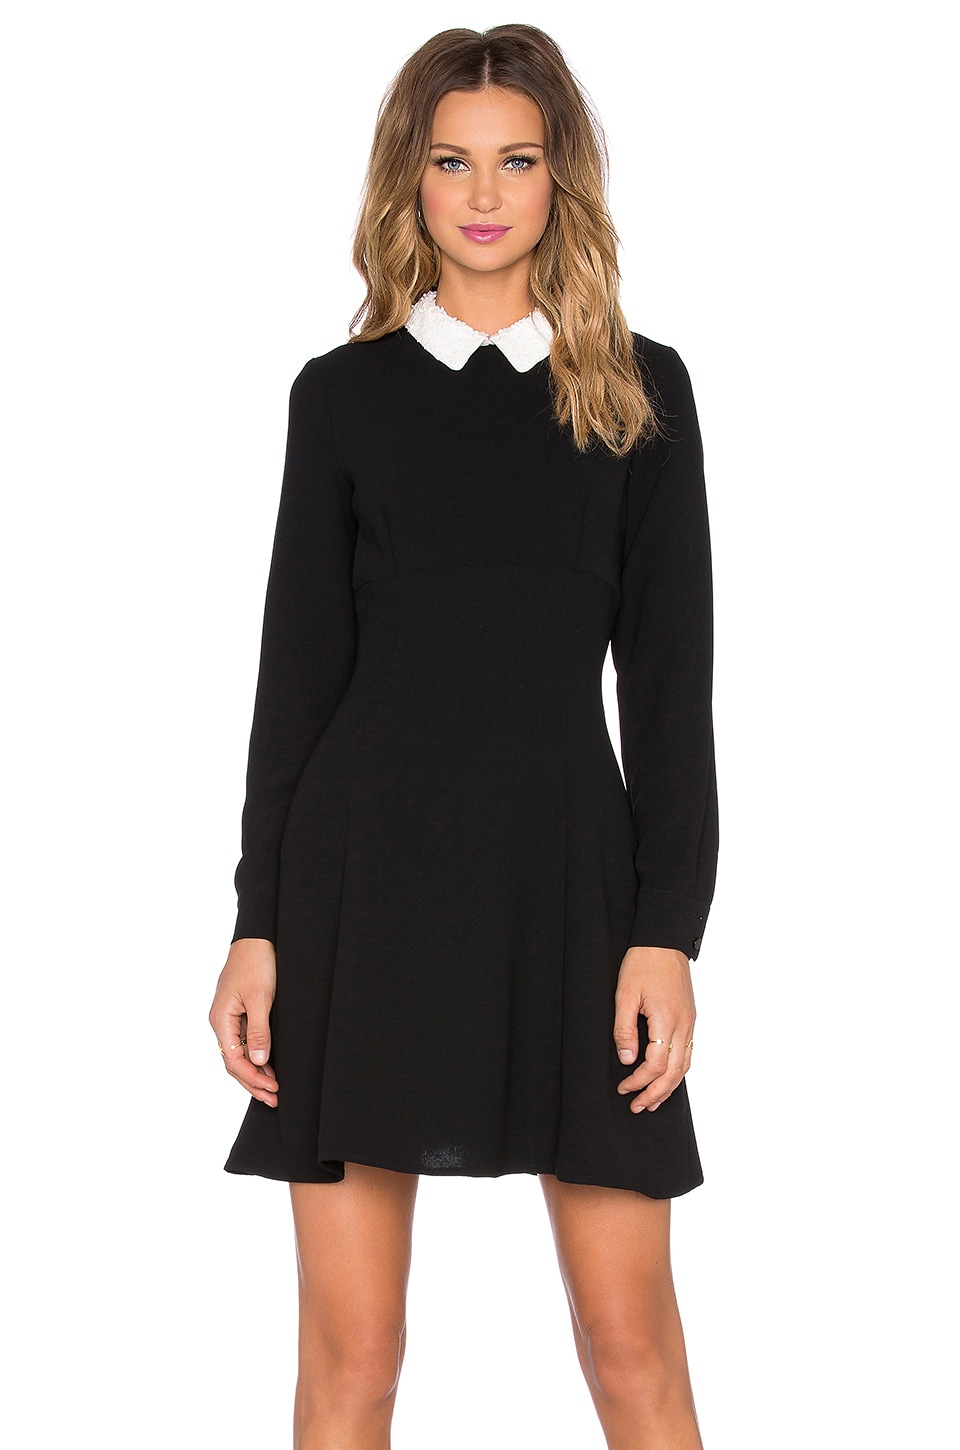 kate spade new york Sequin Collar Crepe Dress in Black | REVOLVE